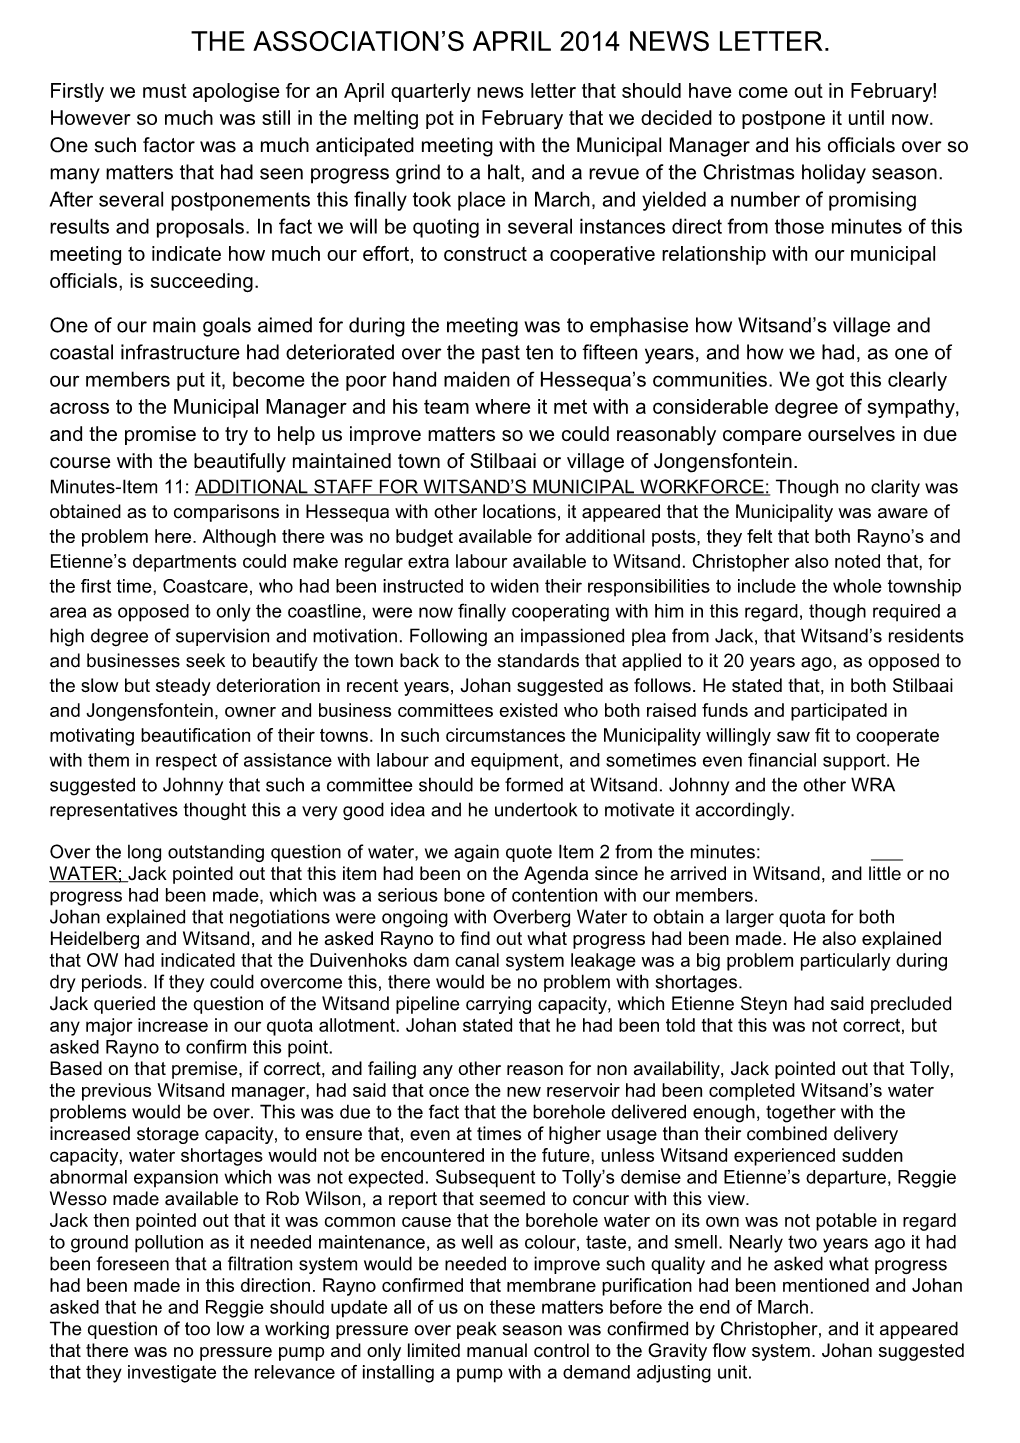 The Association S April 2014 News Letter